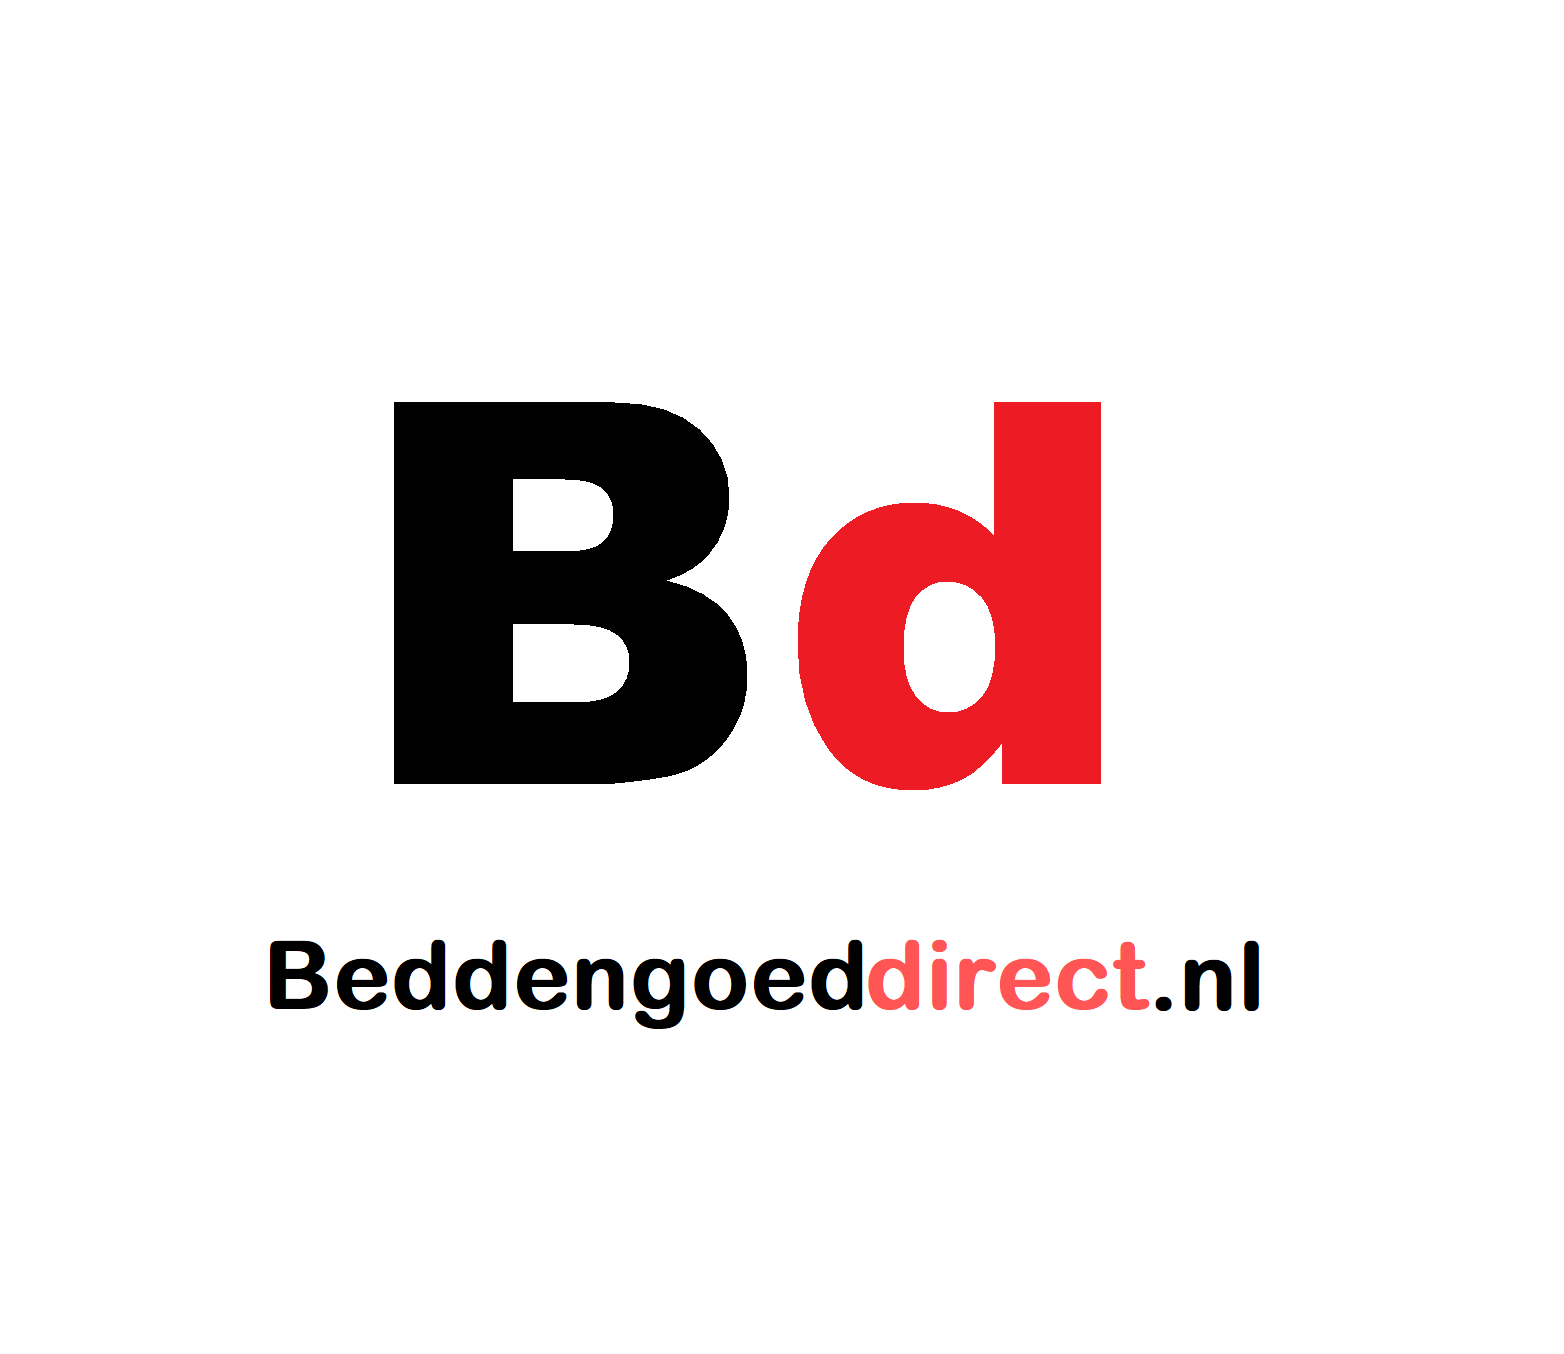 Beddengoeddirect.nl reviews, beoordelingen en ervaringen